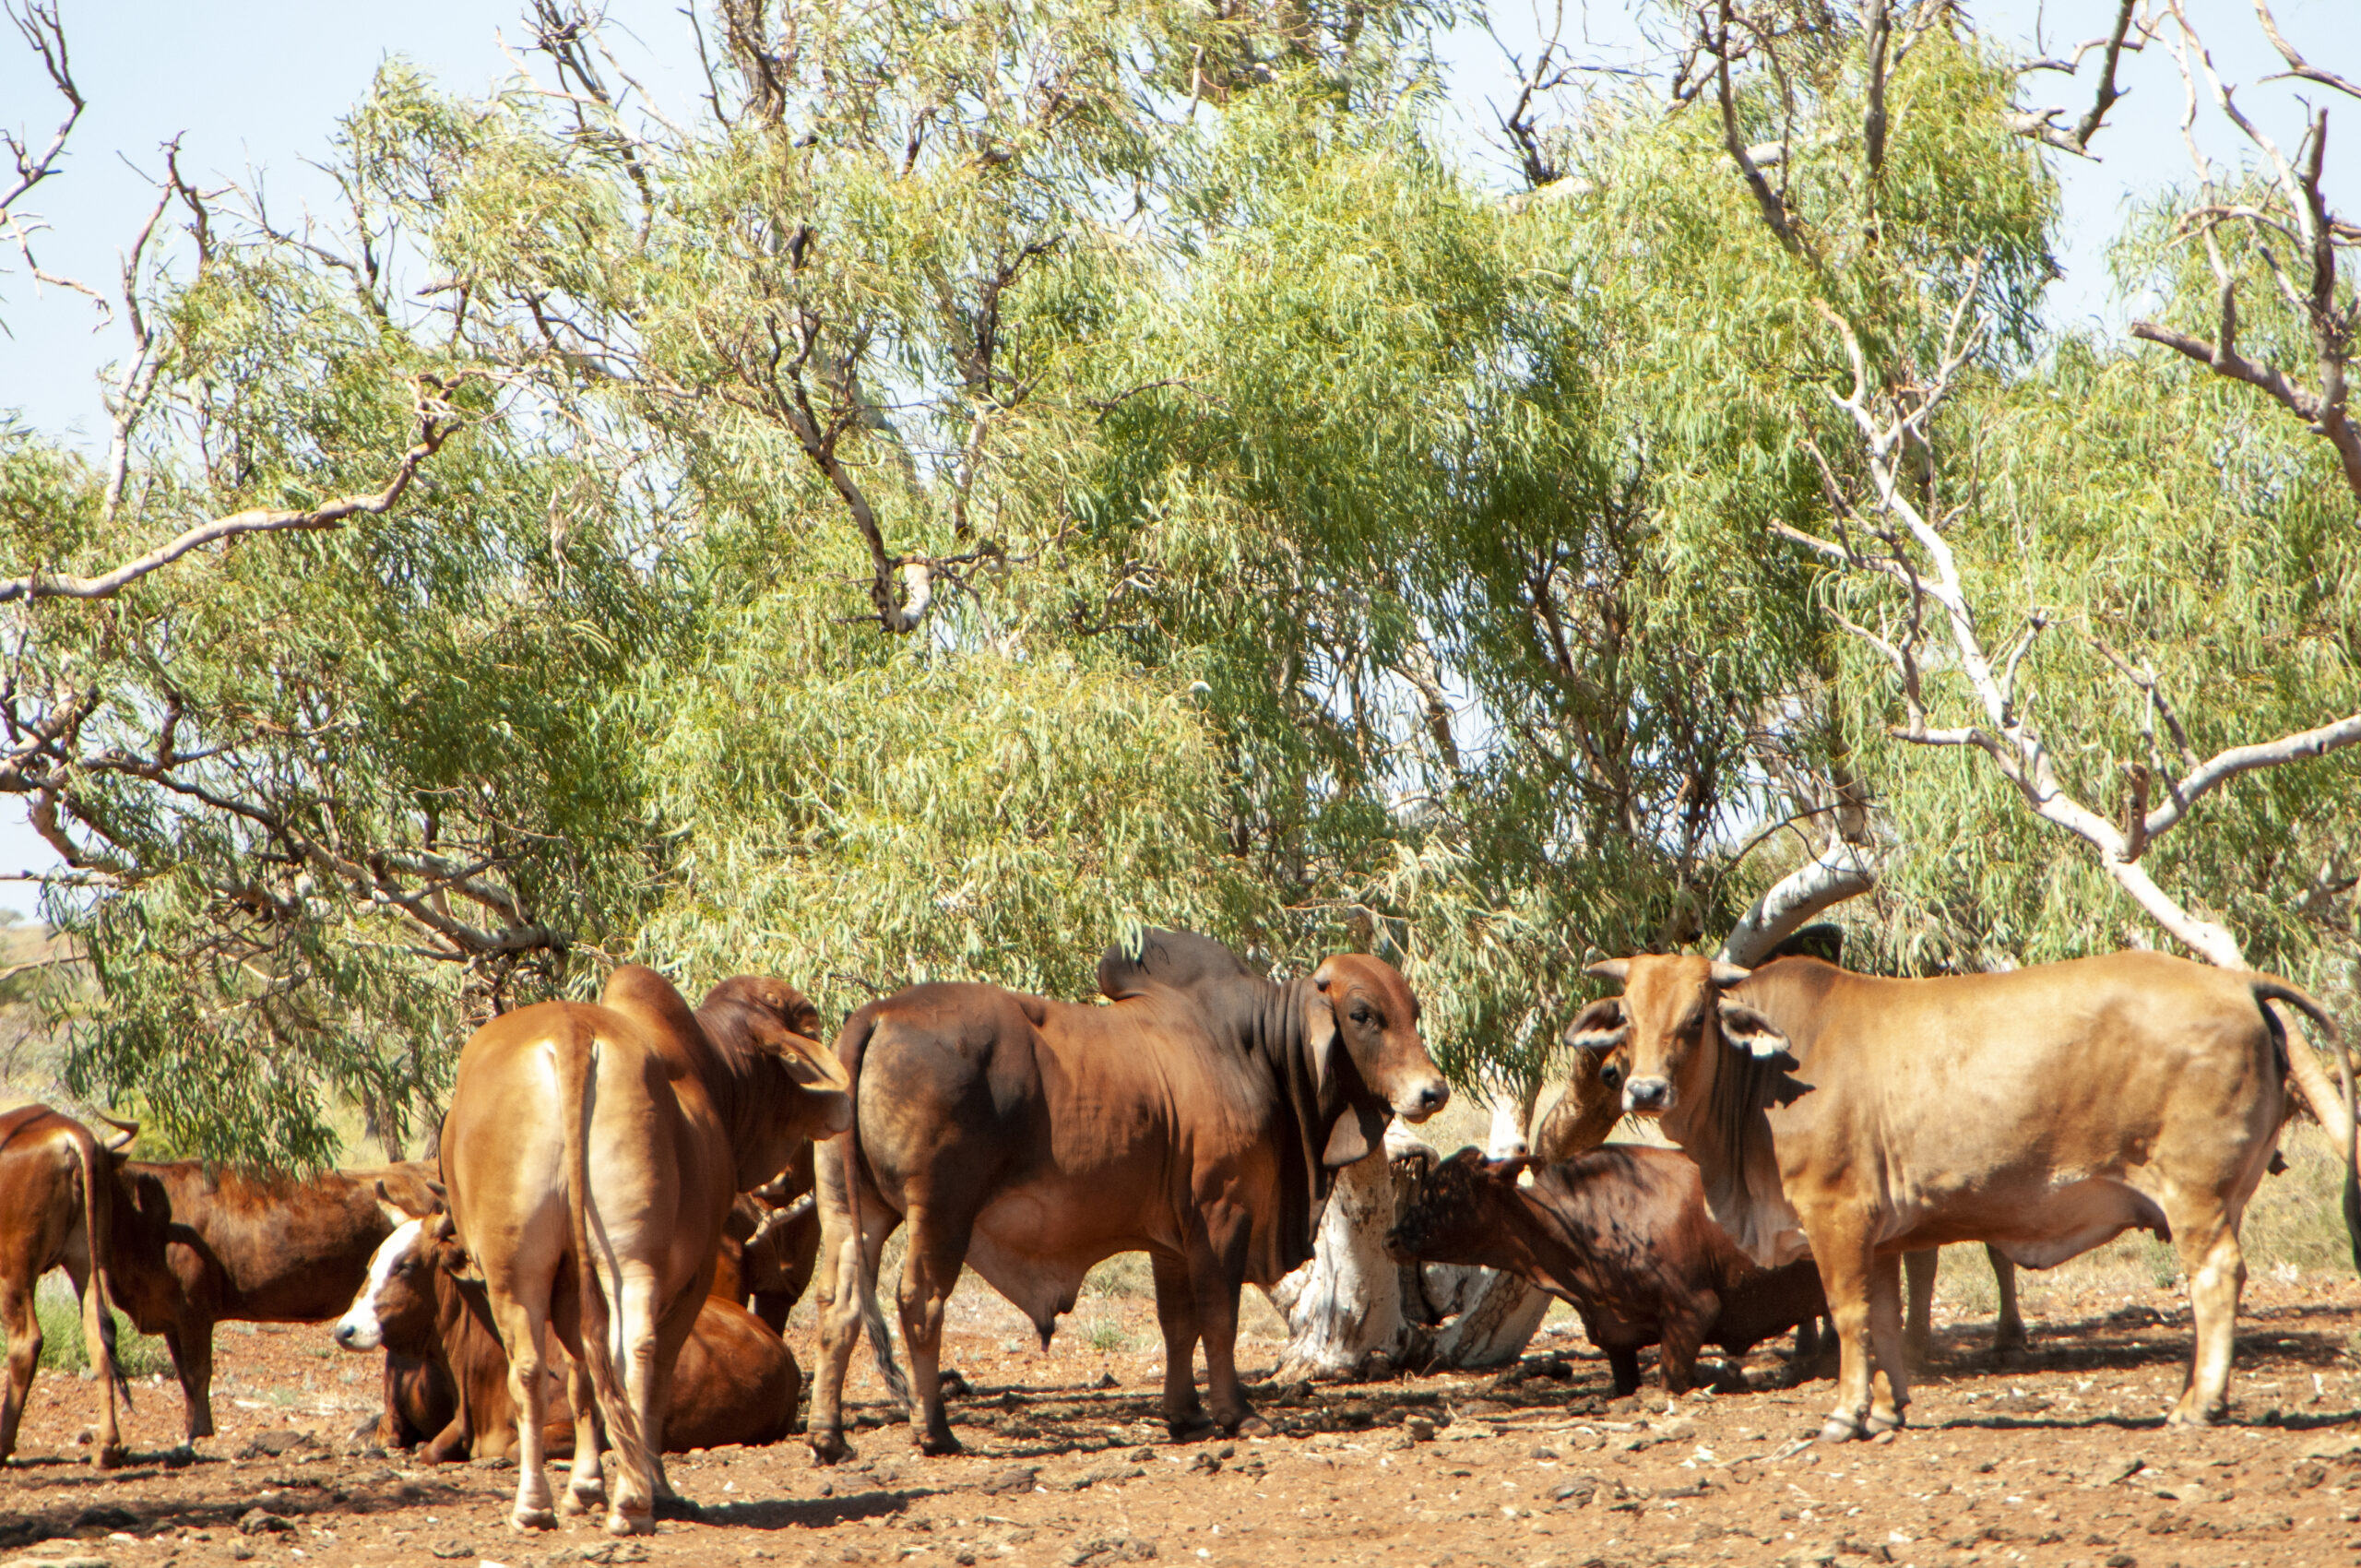 Western Australian cows